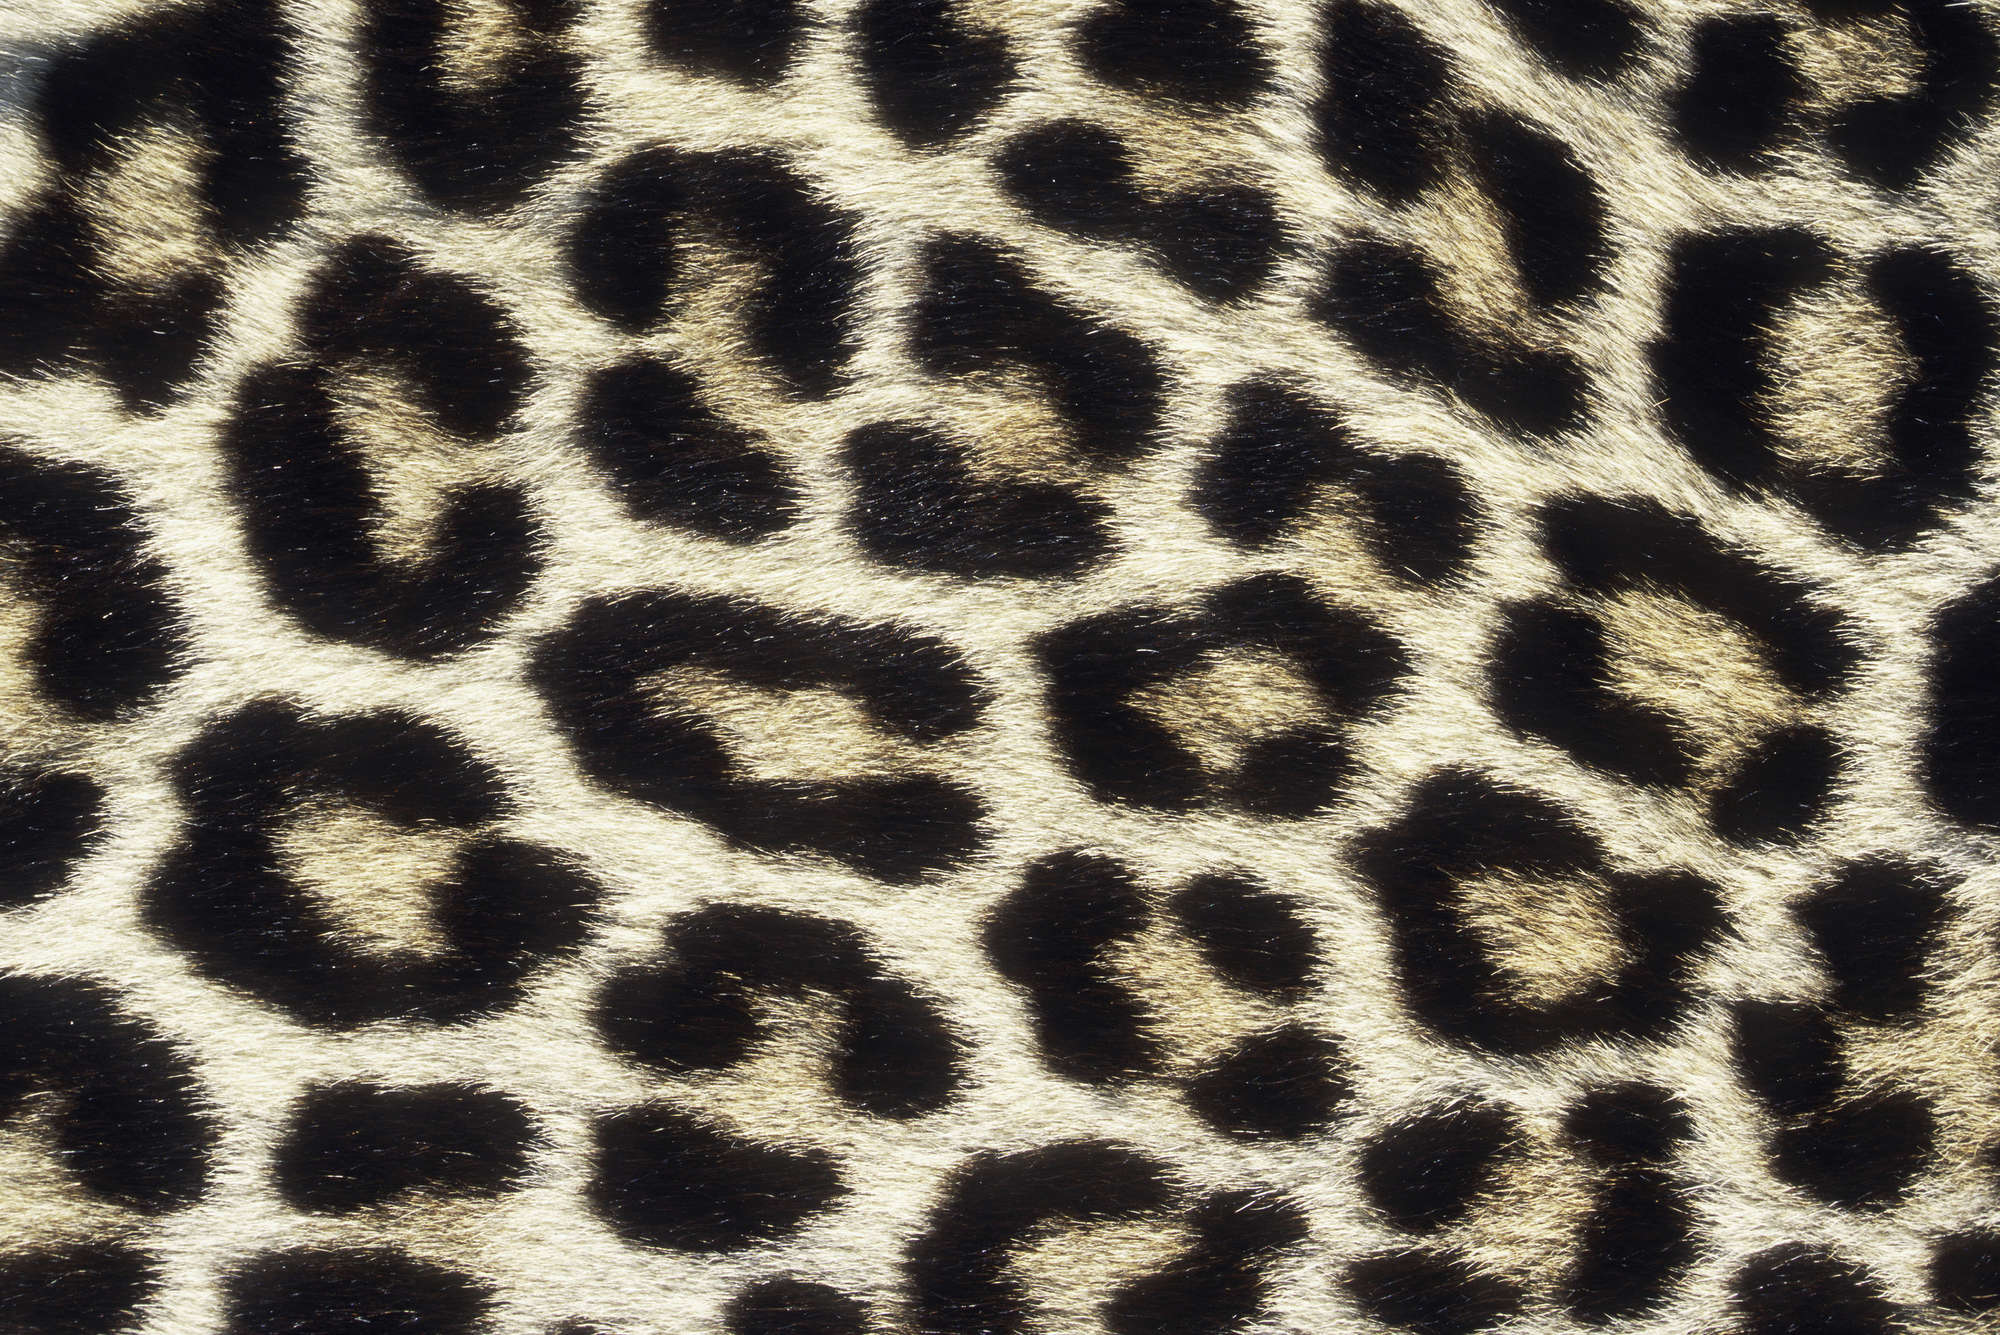             Fototapete mit Leopardenmuster – Perlmutt Glattvlies
        